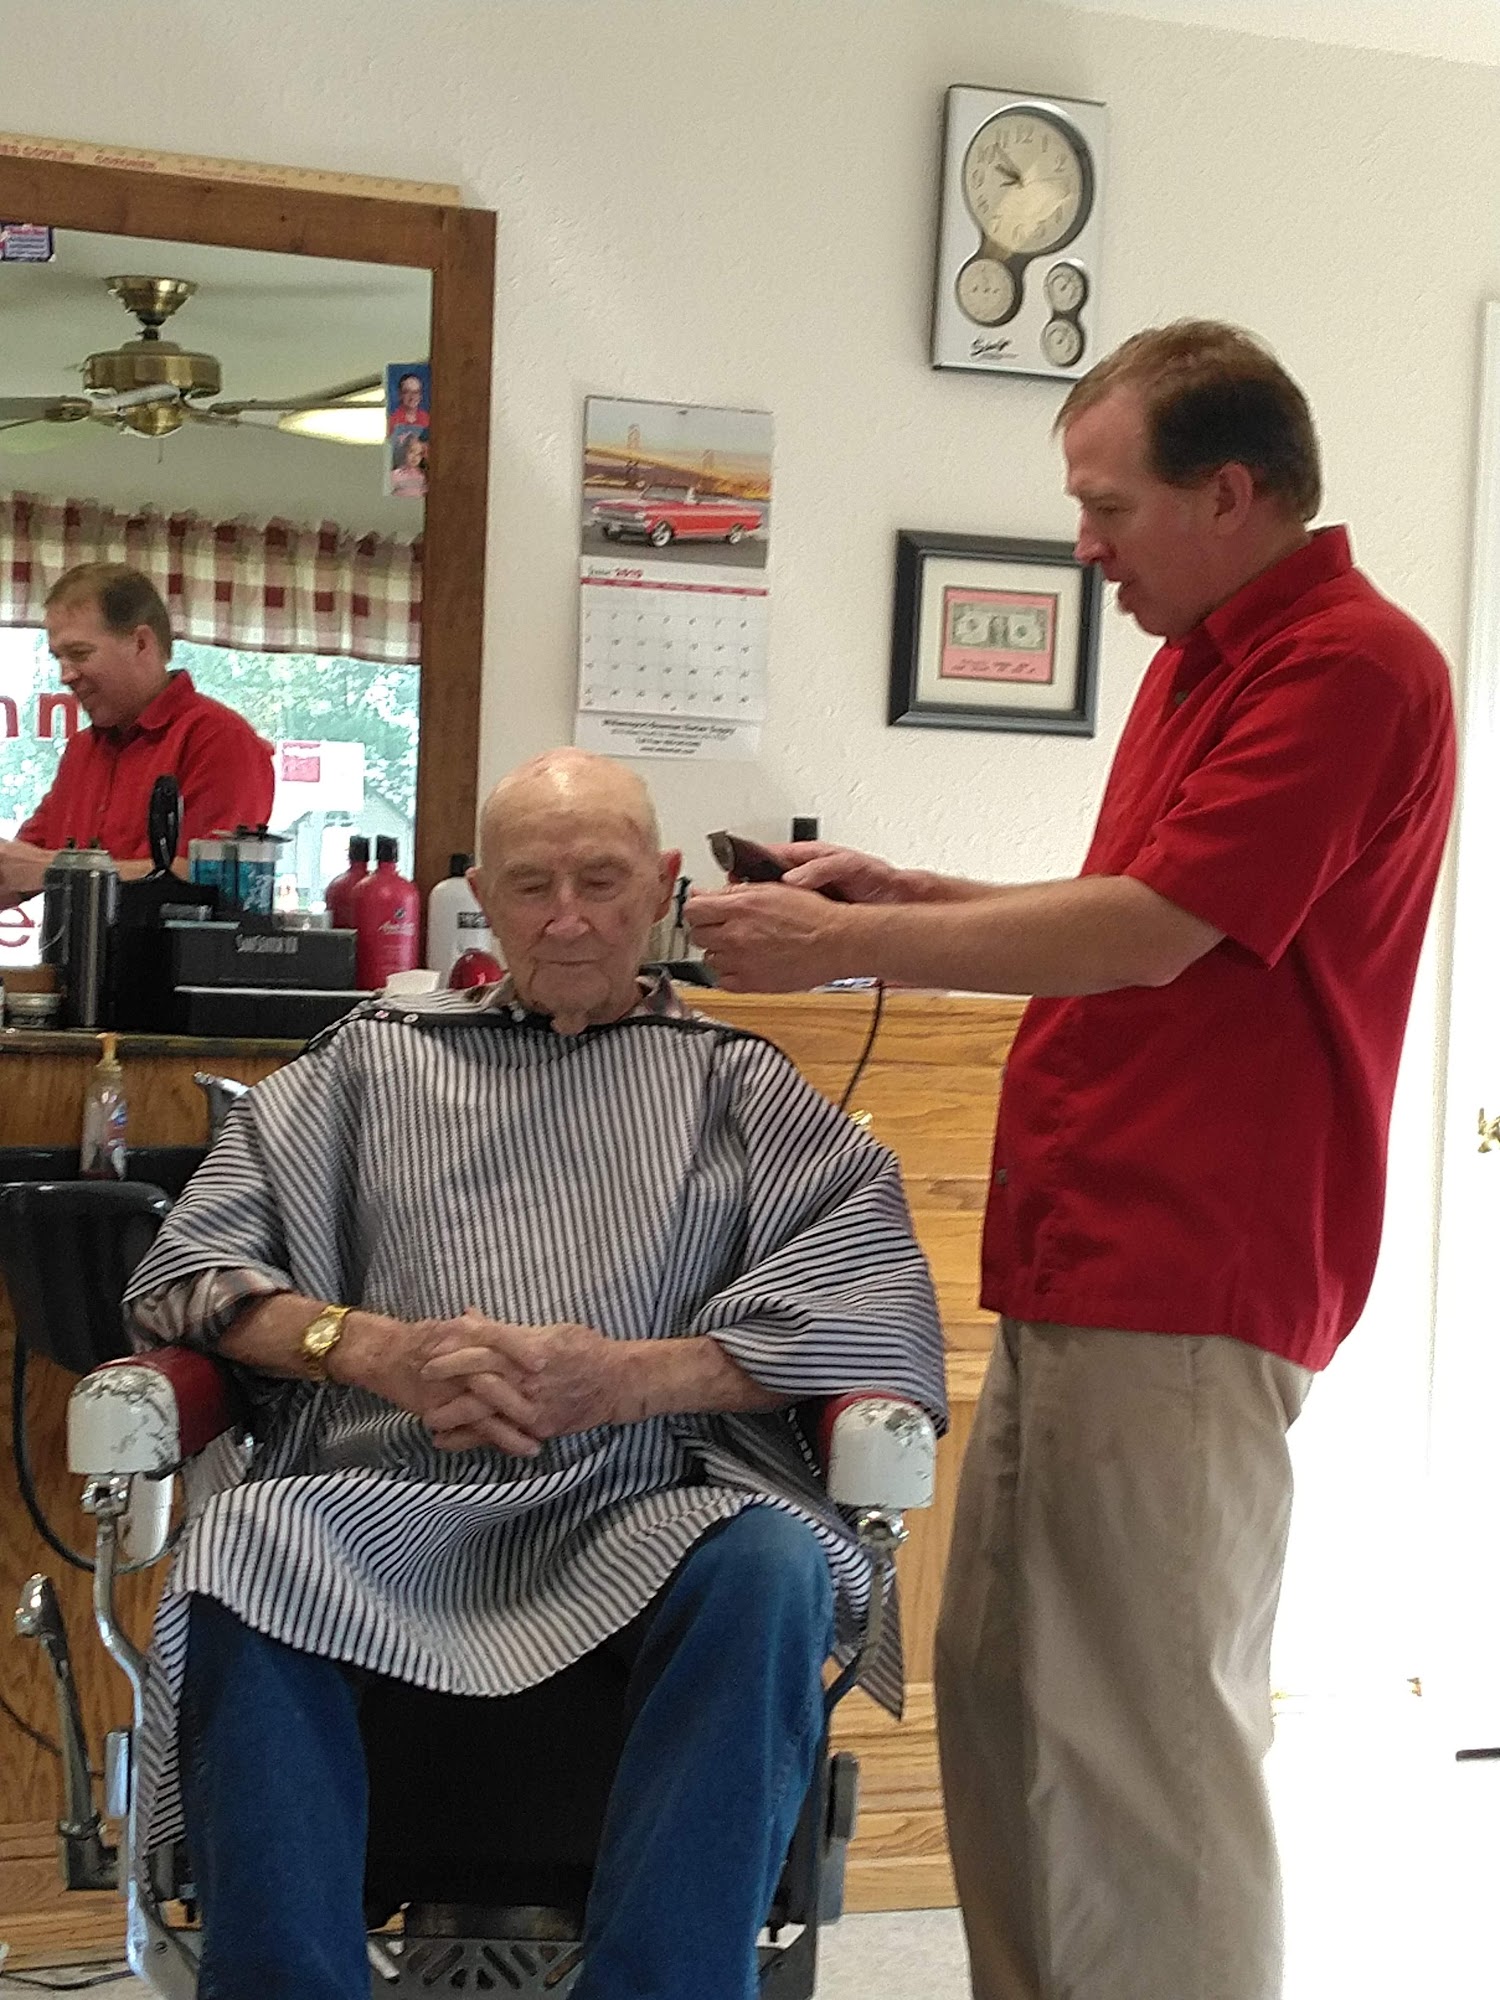 Johnny's Barber Shop 101 N Desloge Dr, Desloge Missouri 63601